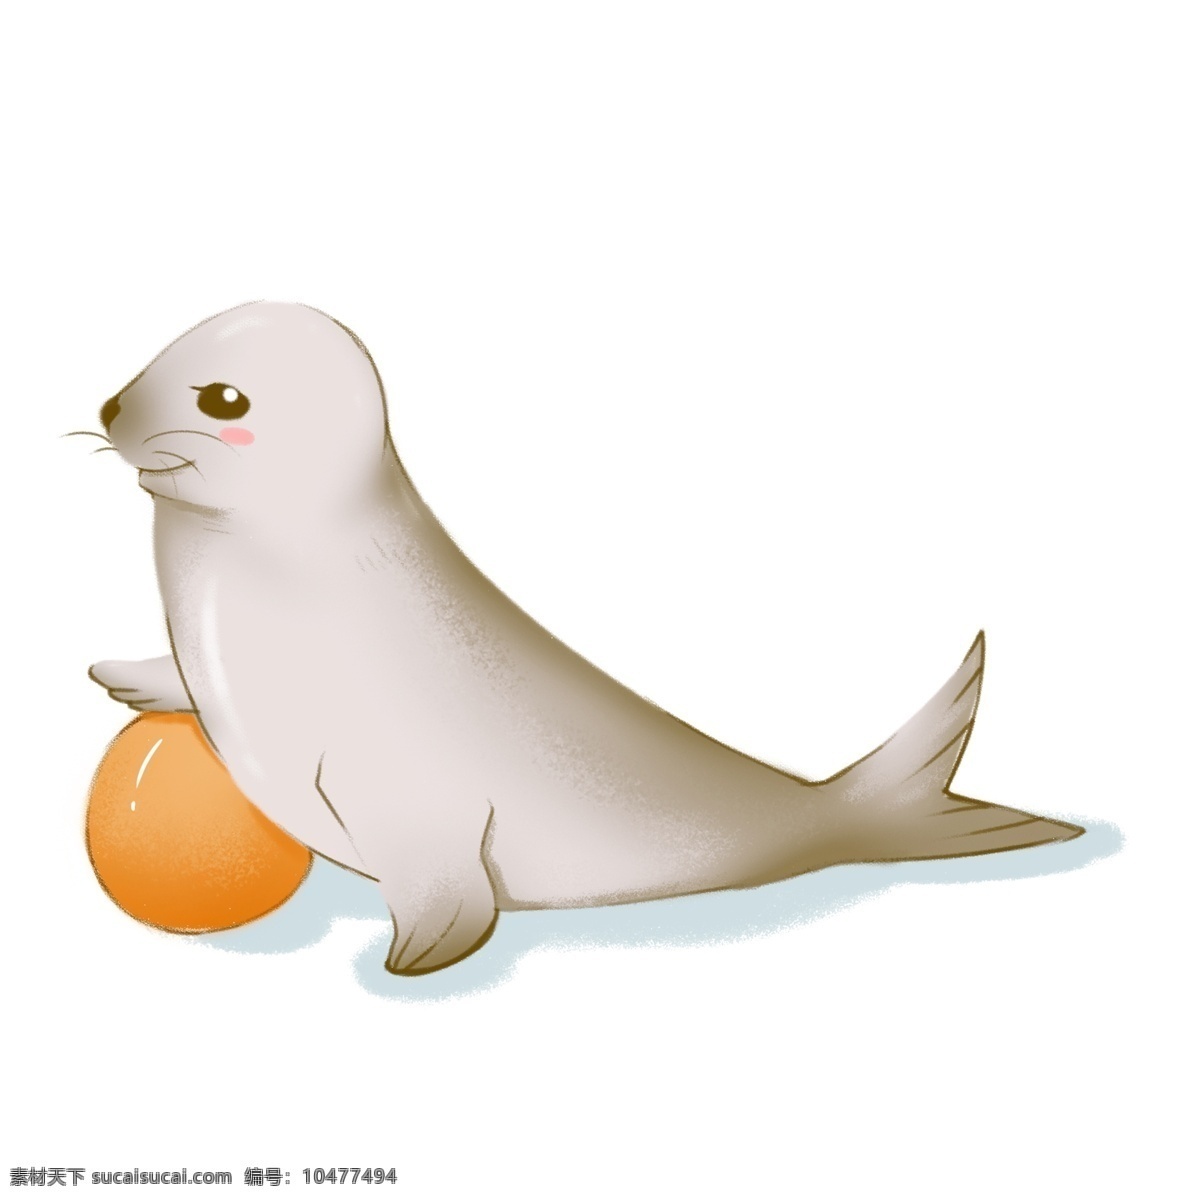 可爱 手绘 棕色 海豹 玩耍 宝宝 冬季 动物 清新 温馨 可爱动物 手账素材 小海豹 海报 动物插图 卡通 卡通插图 创意卡通 插图